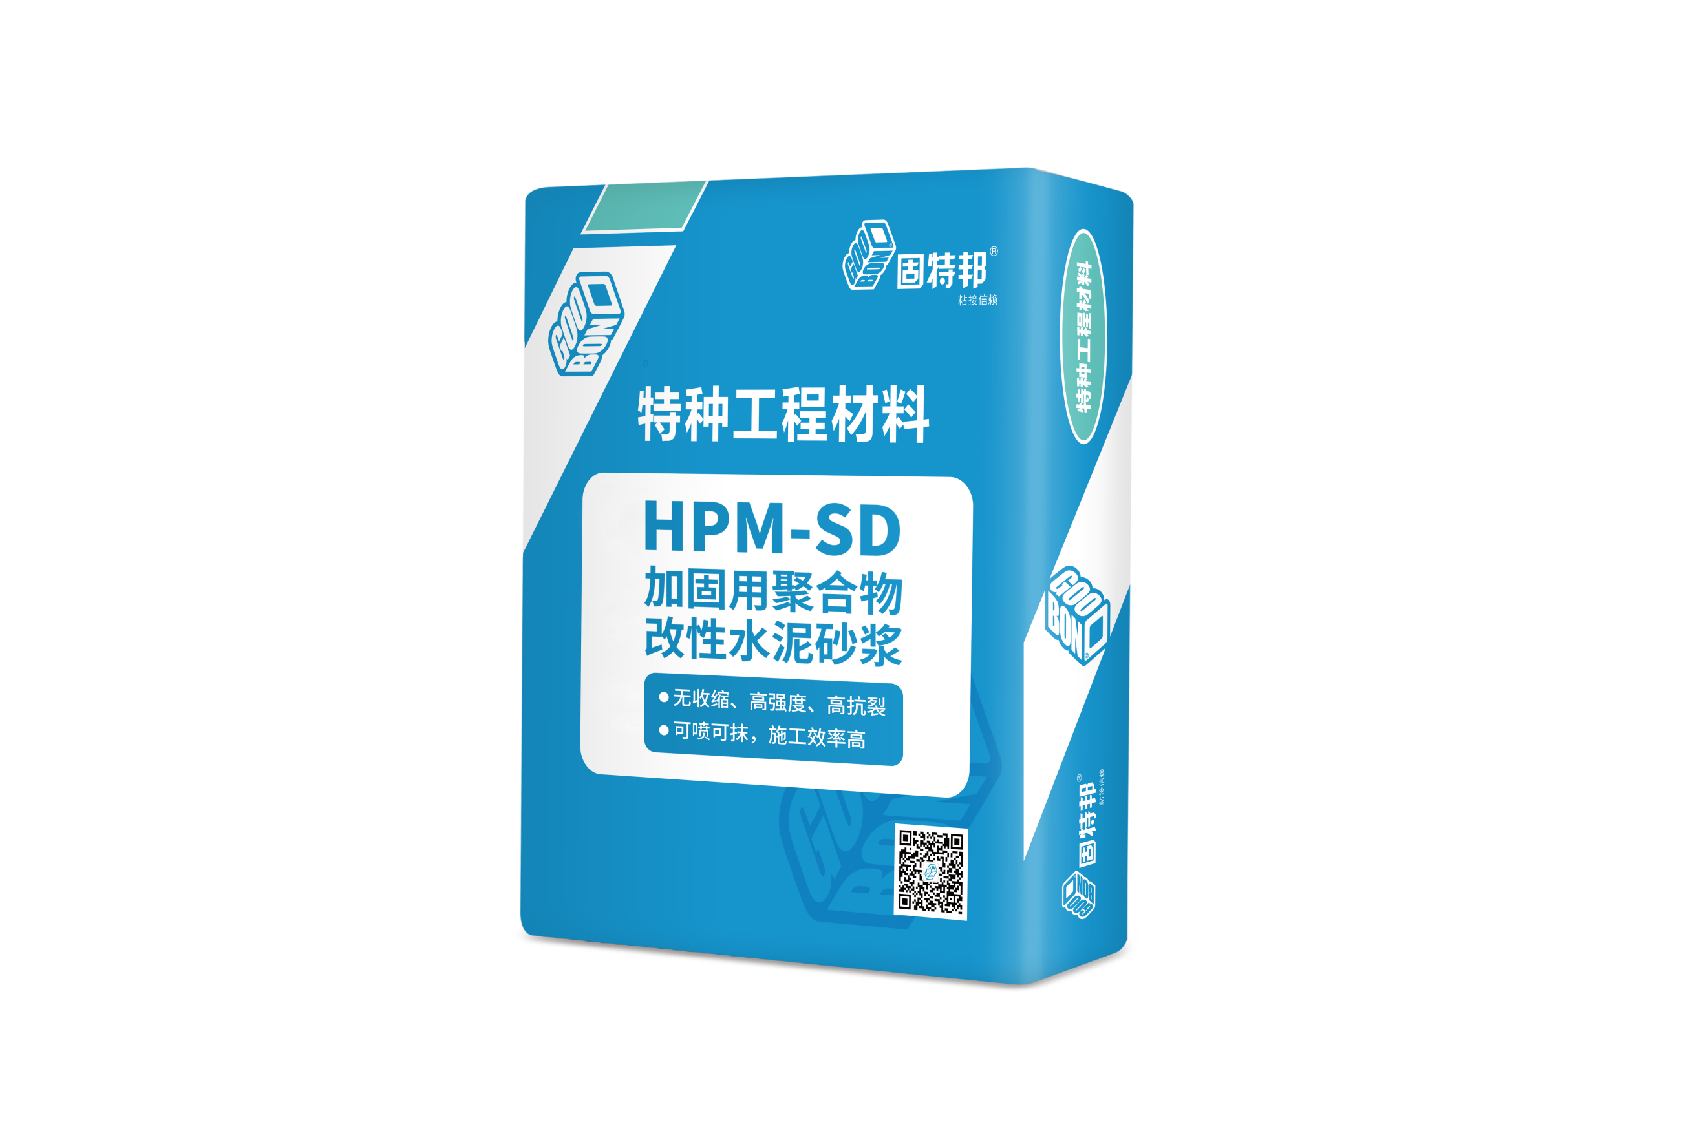 HPM-SD 加固用聚合物改性水泥砂浆